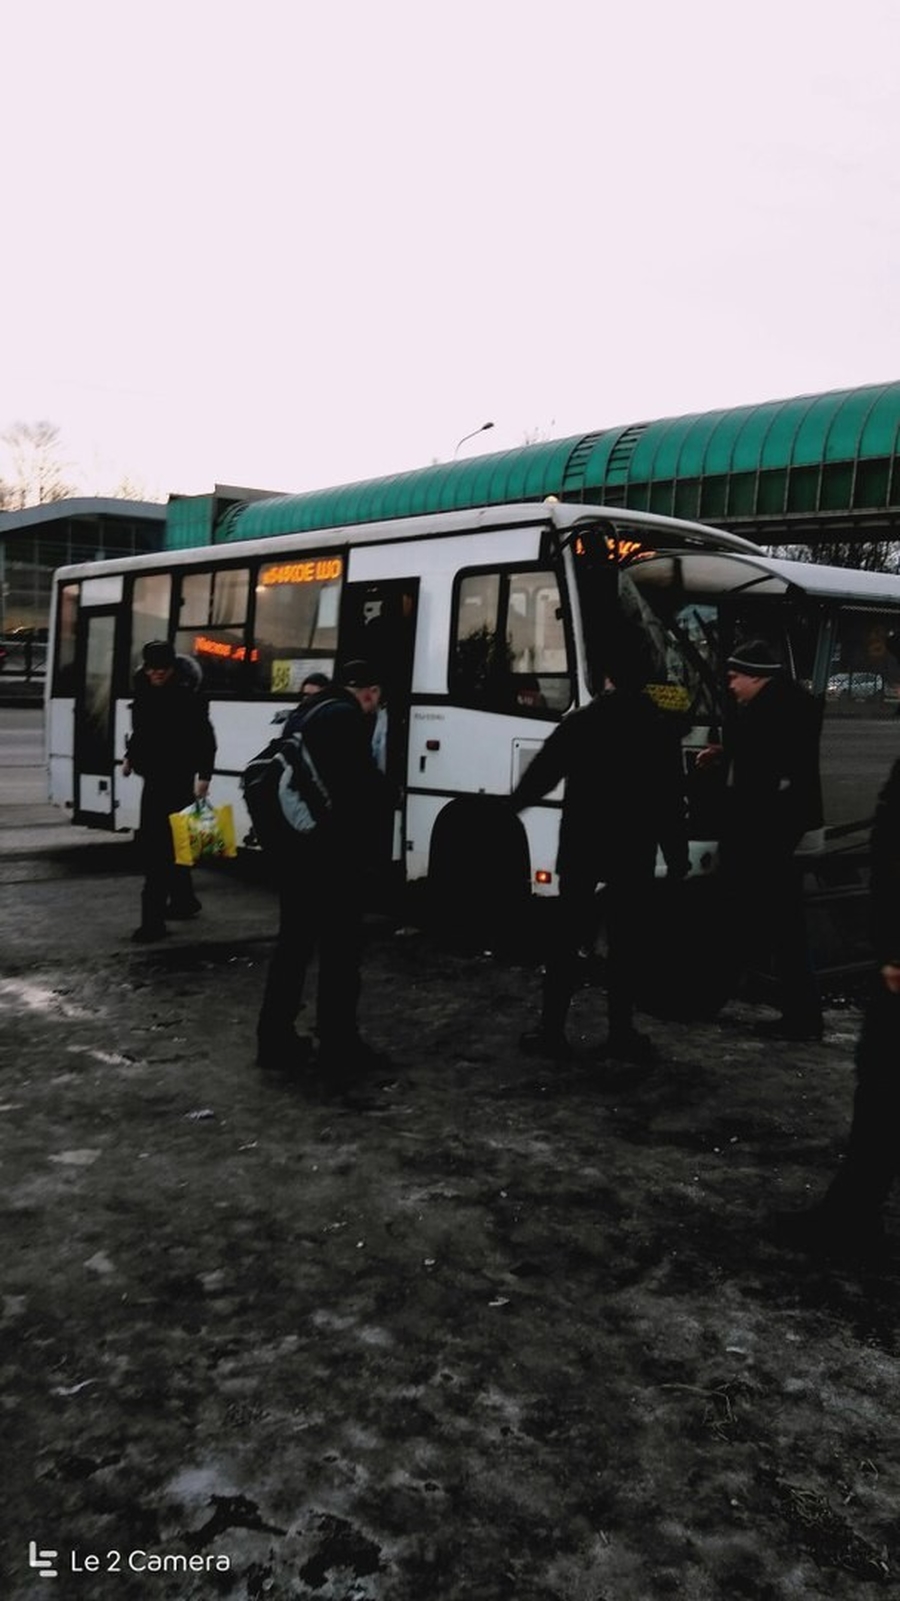 На Пулковском шоссе маршрутный автобус протаранил остановку